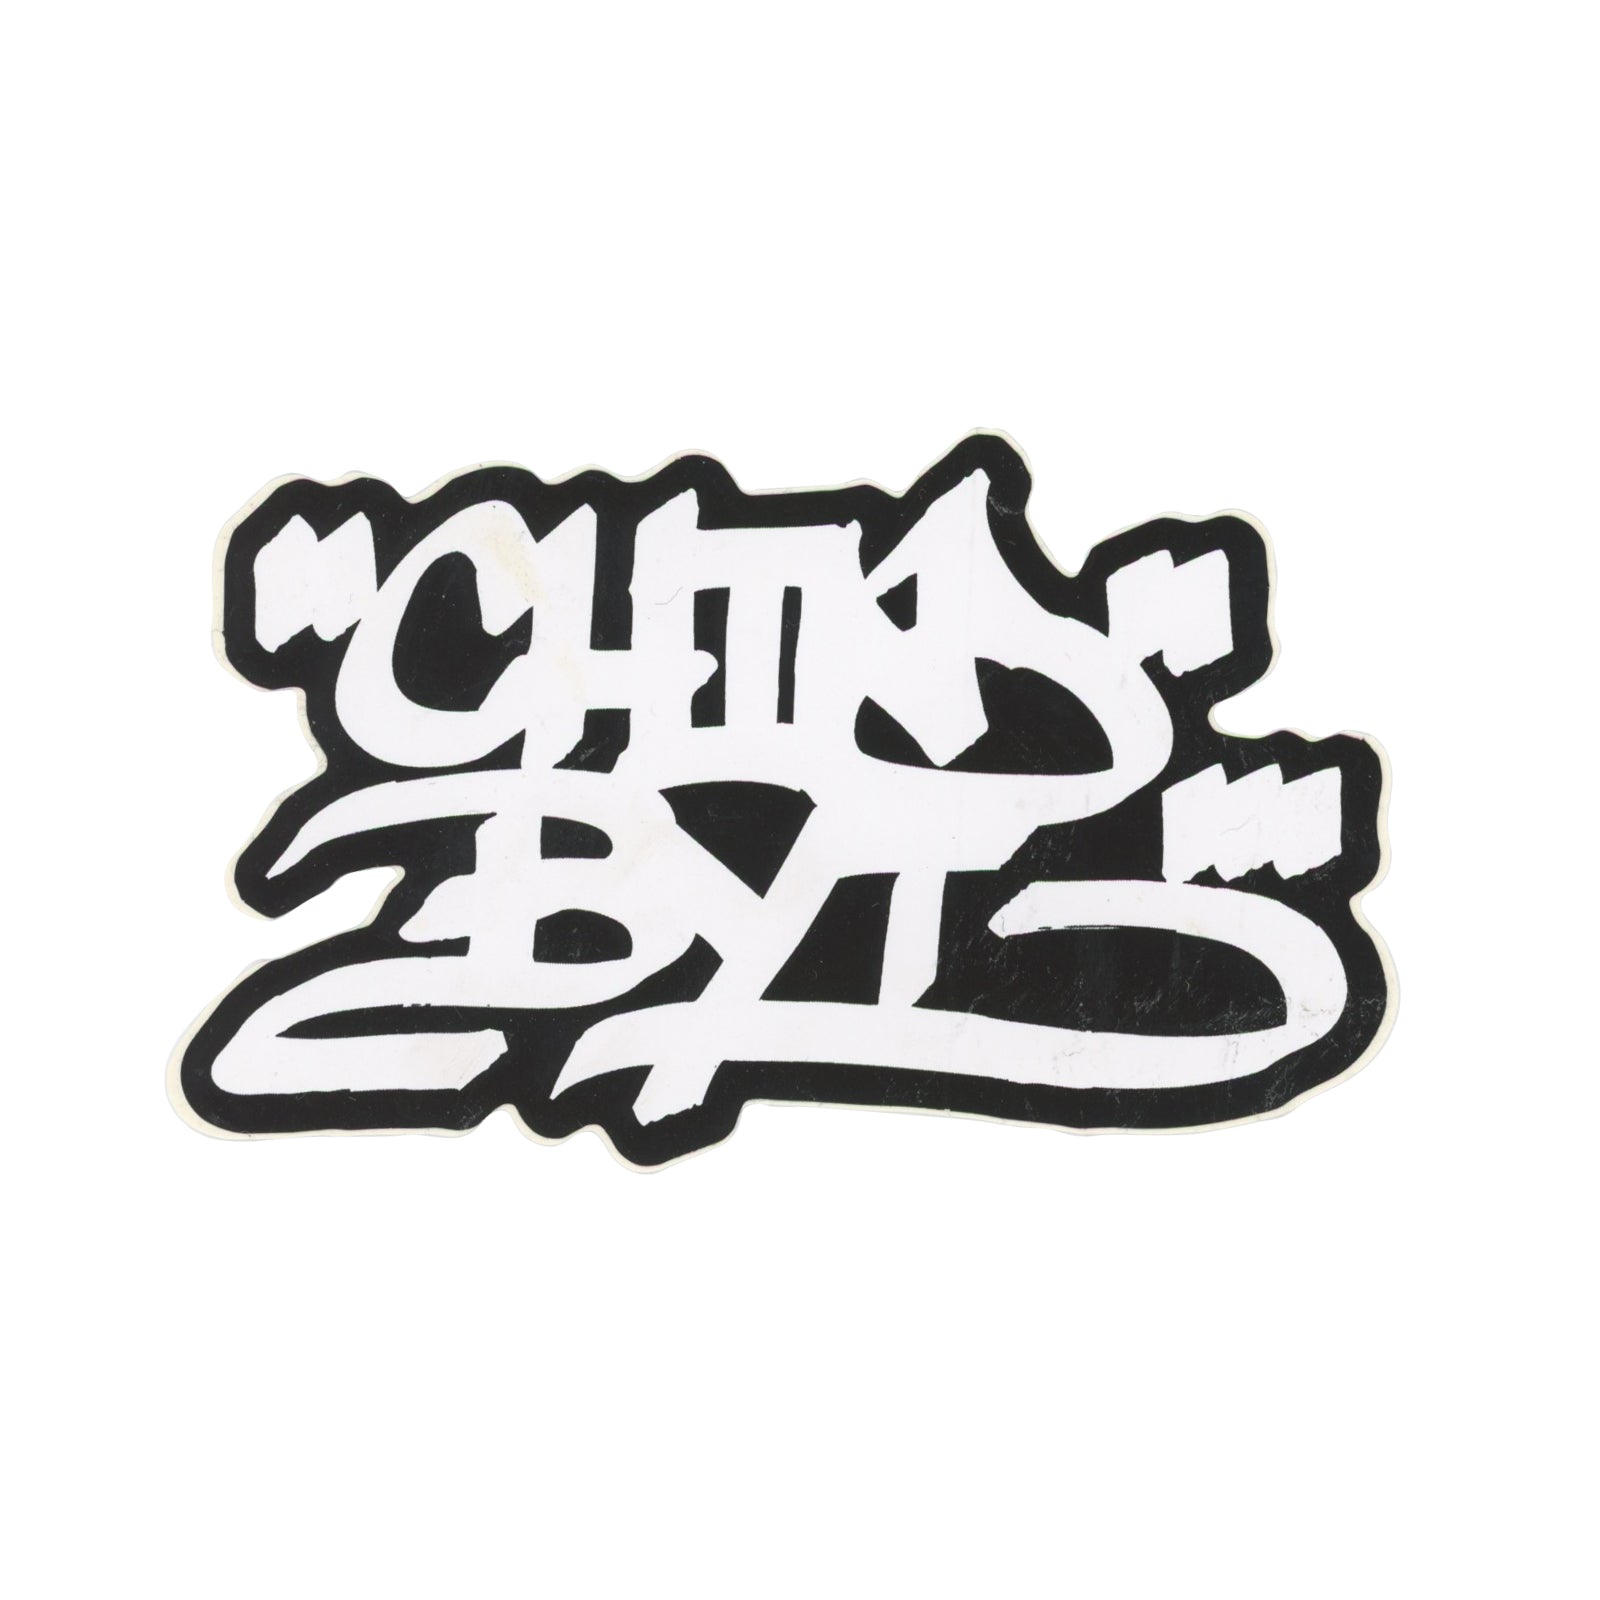 CHINO BYI Graffiti Black White Sticker